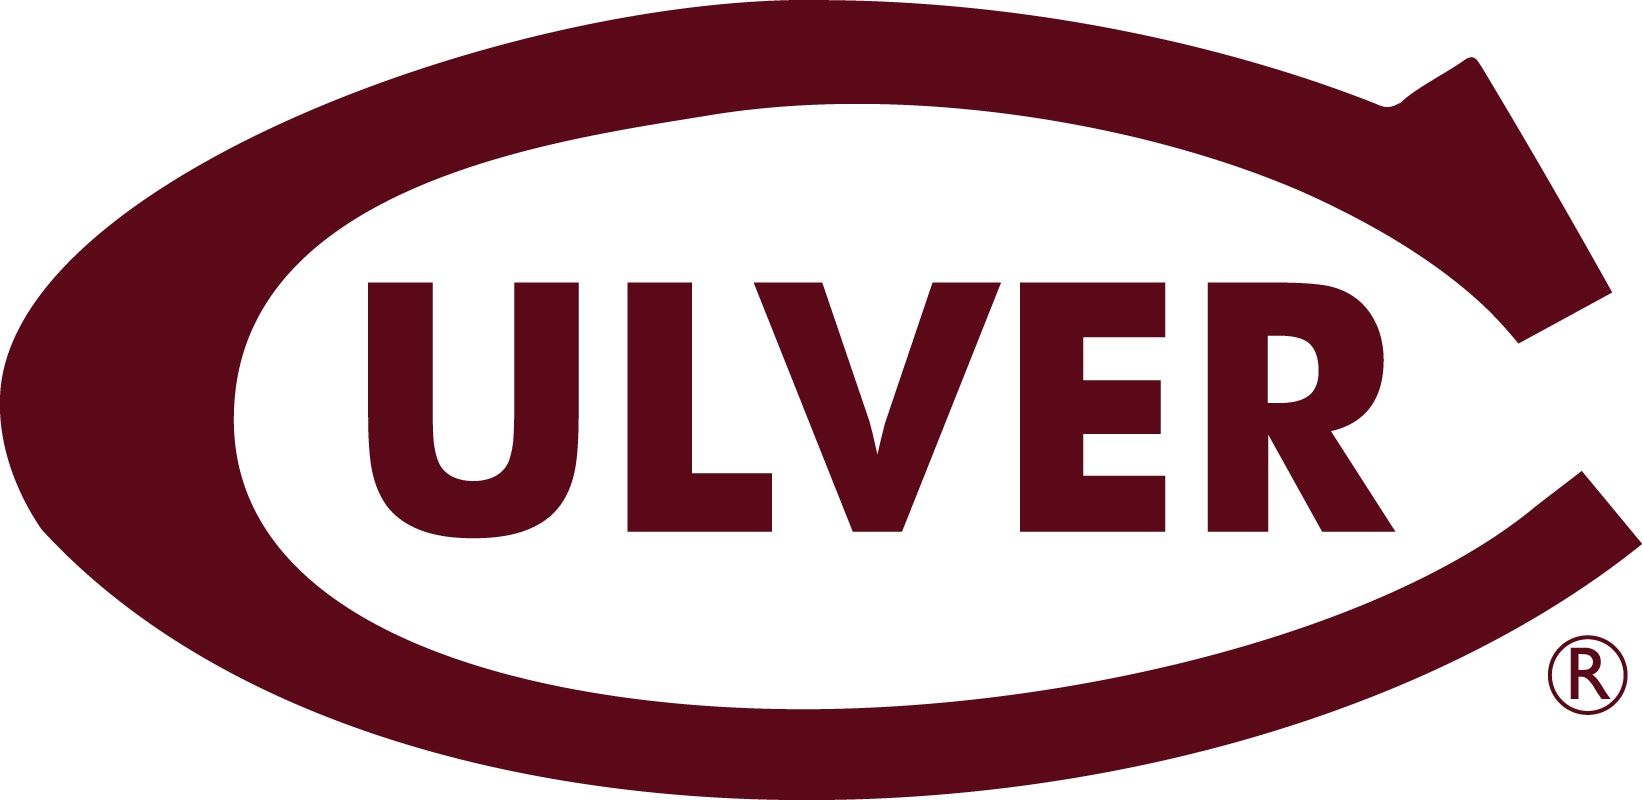 Culver Academy